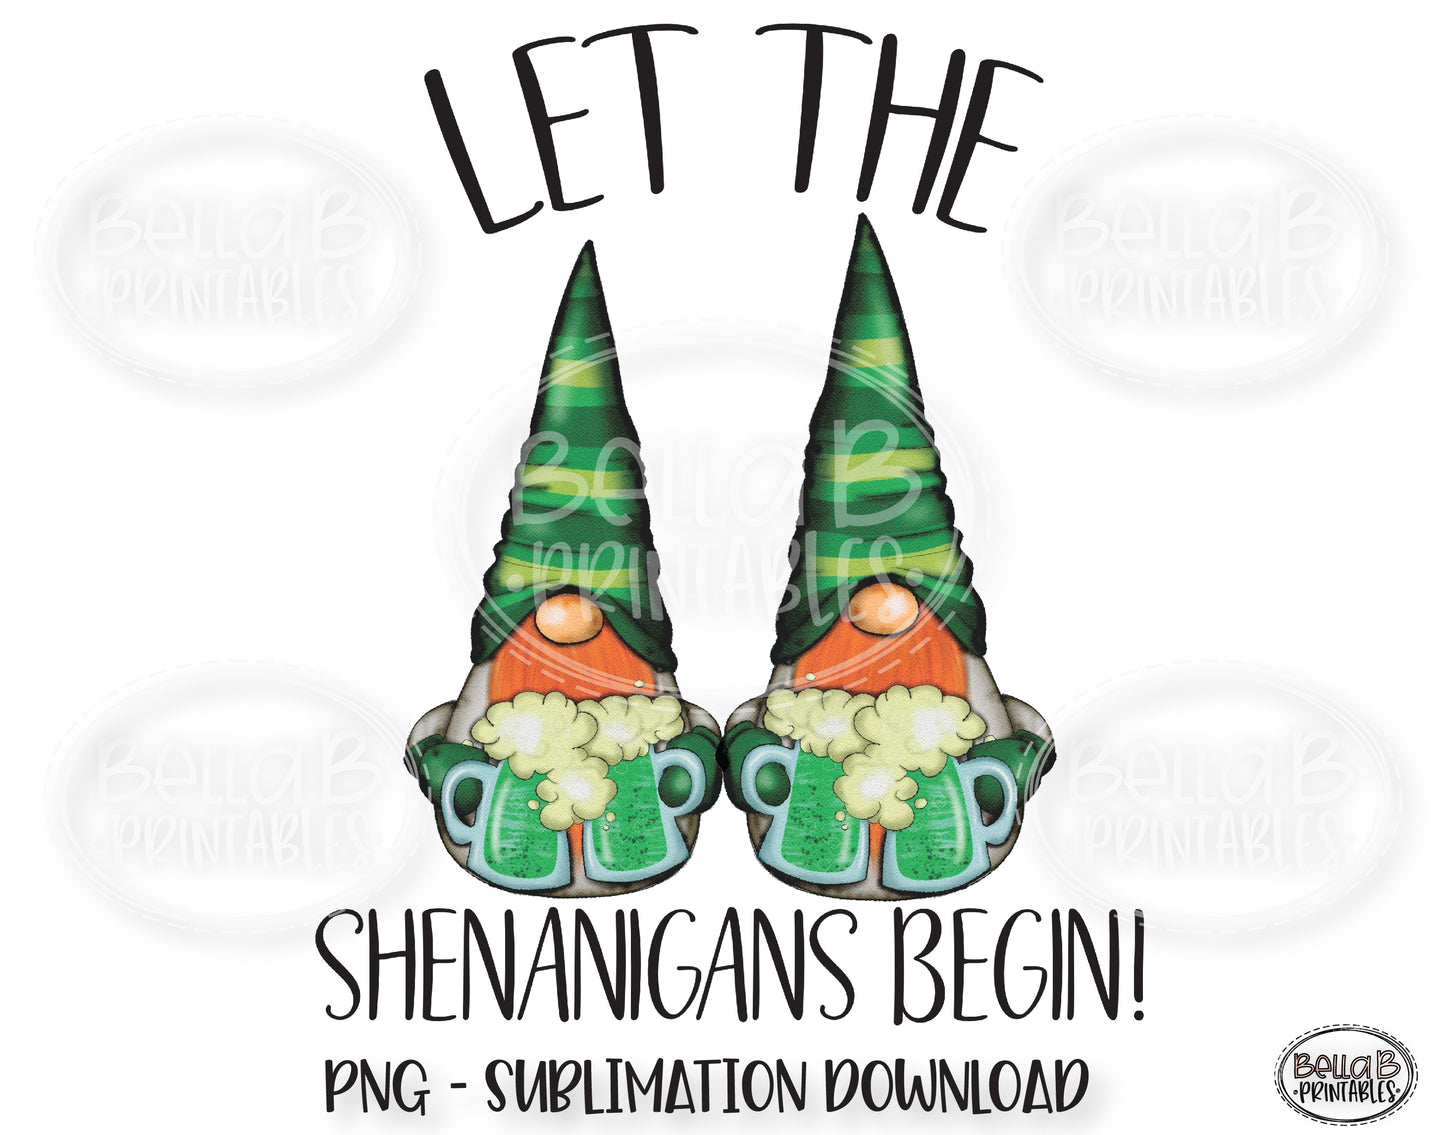 St Patricks Day Sublimation Design, Gnomes, Let The Shenanigans Begin Sublimation